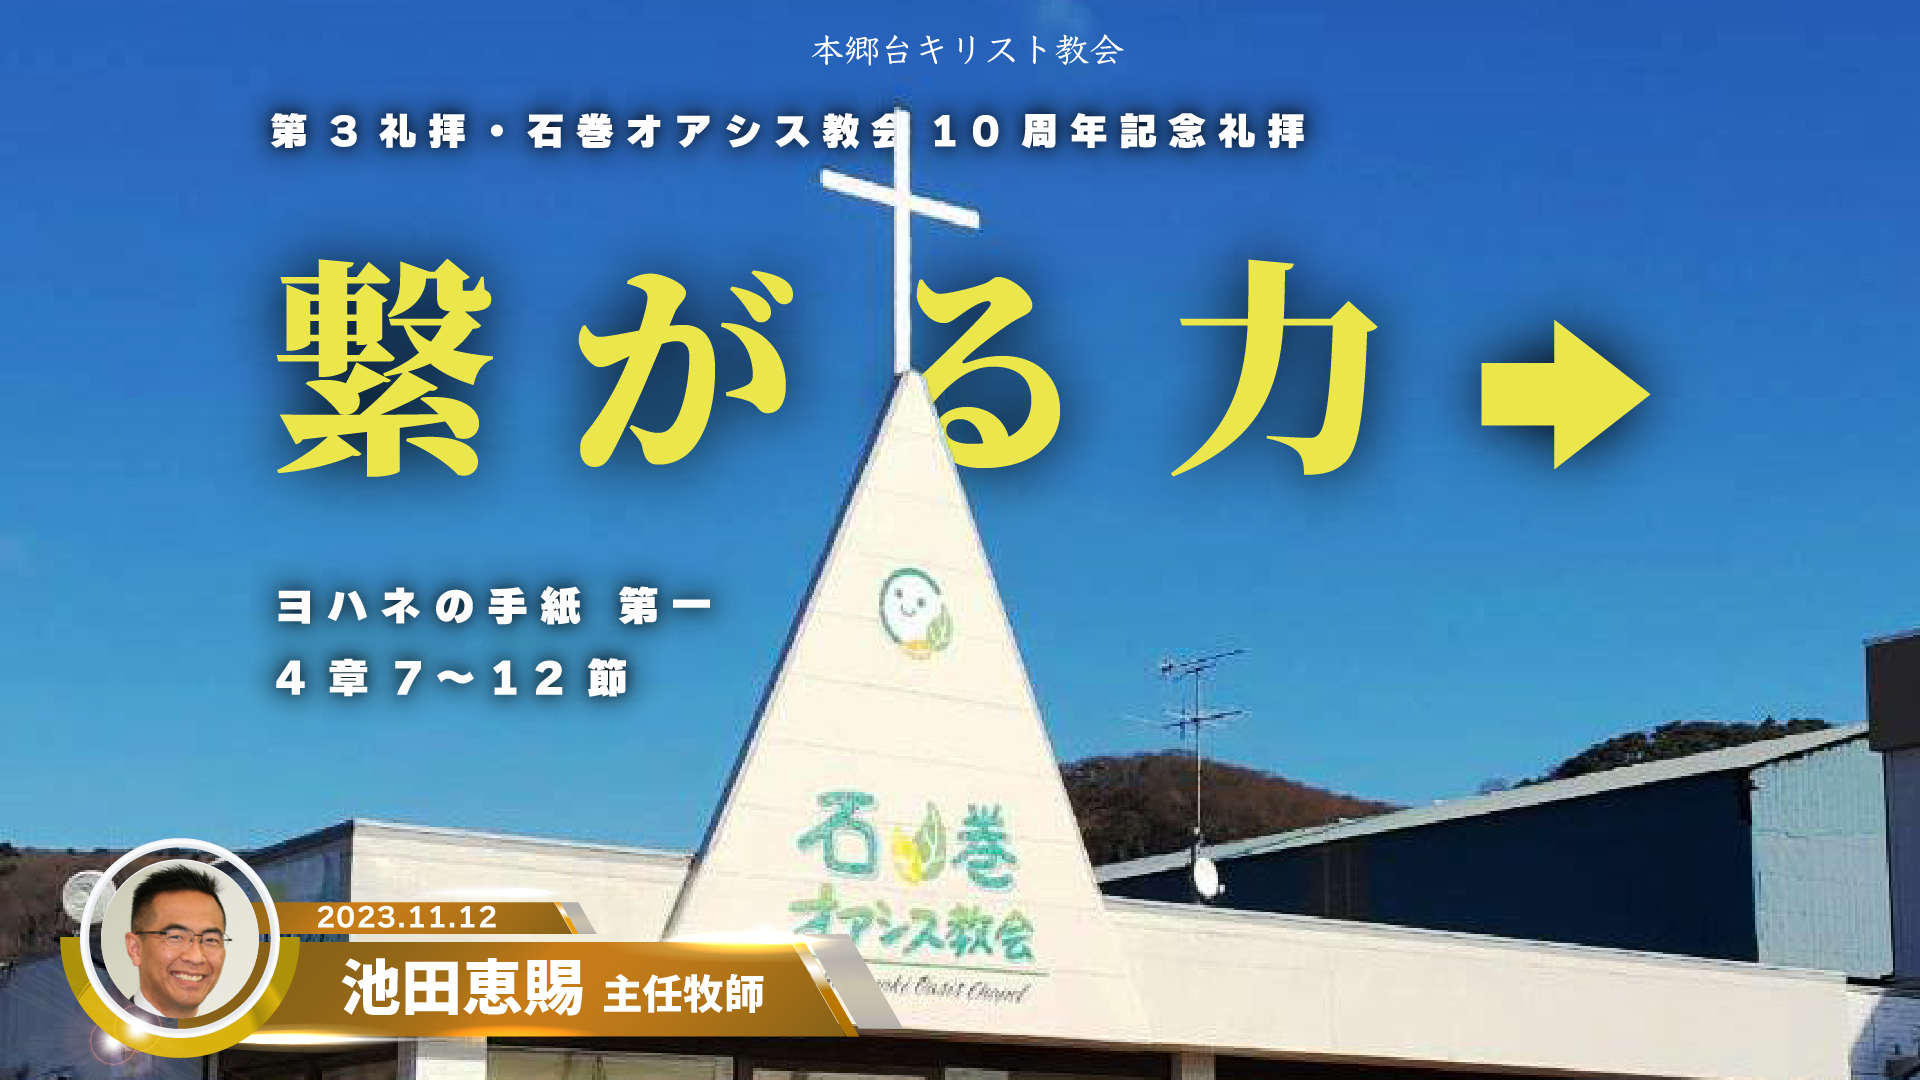 2023年11月12日 石巻オアシス教会10周年記念礼拝「繋がる力→」